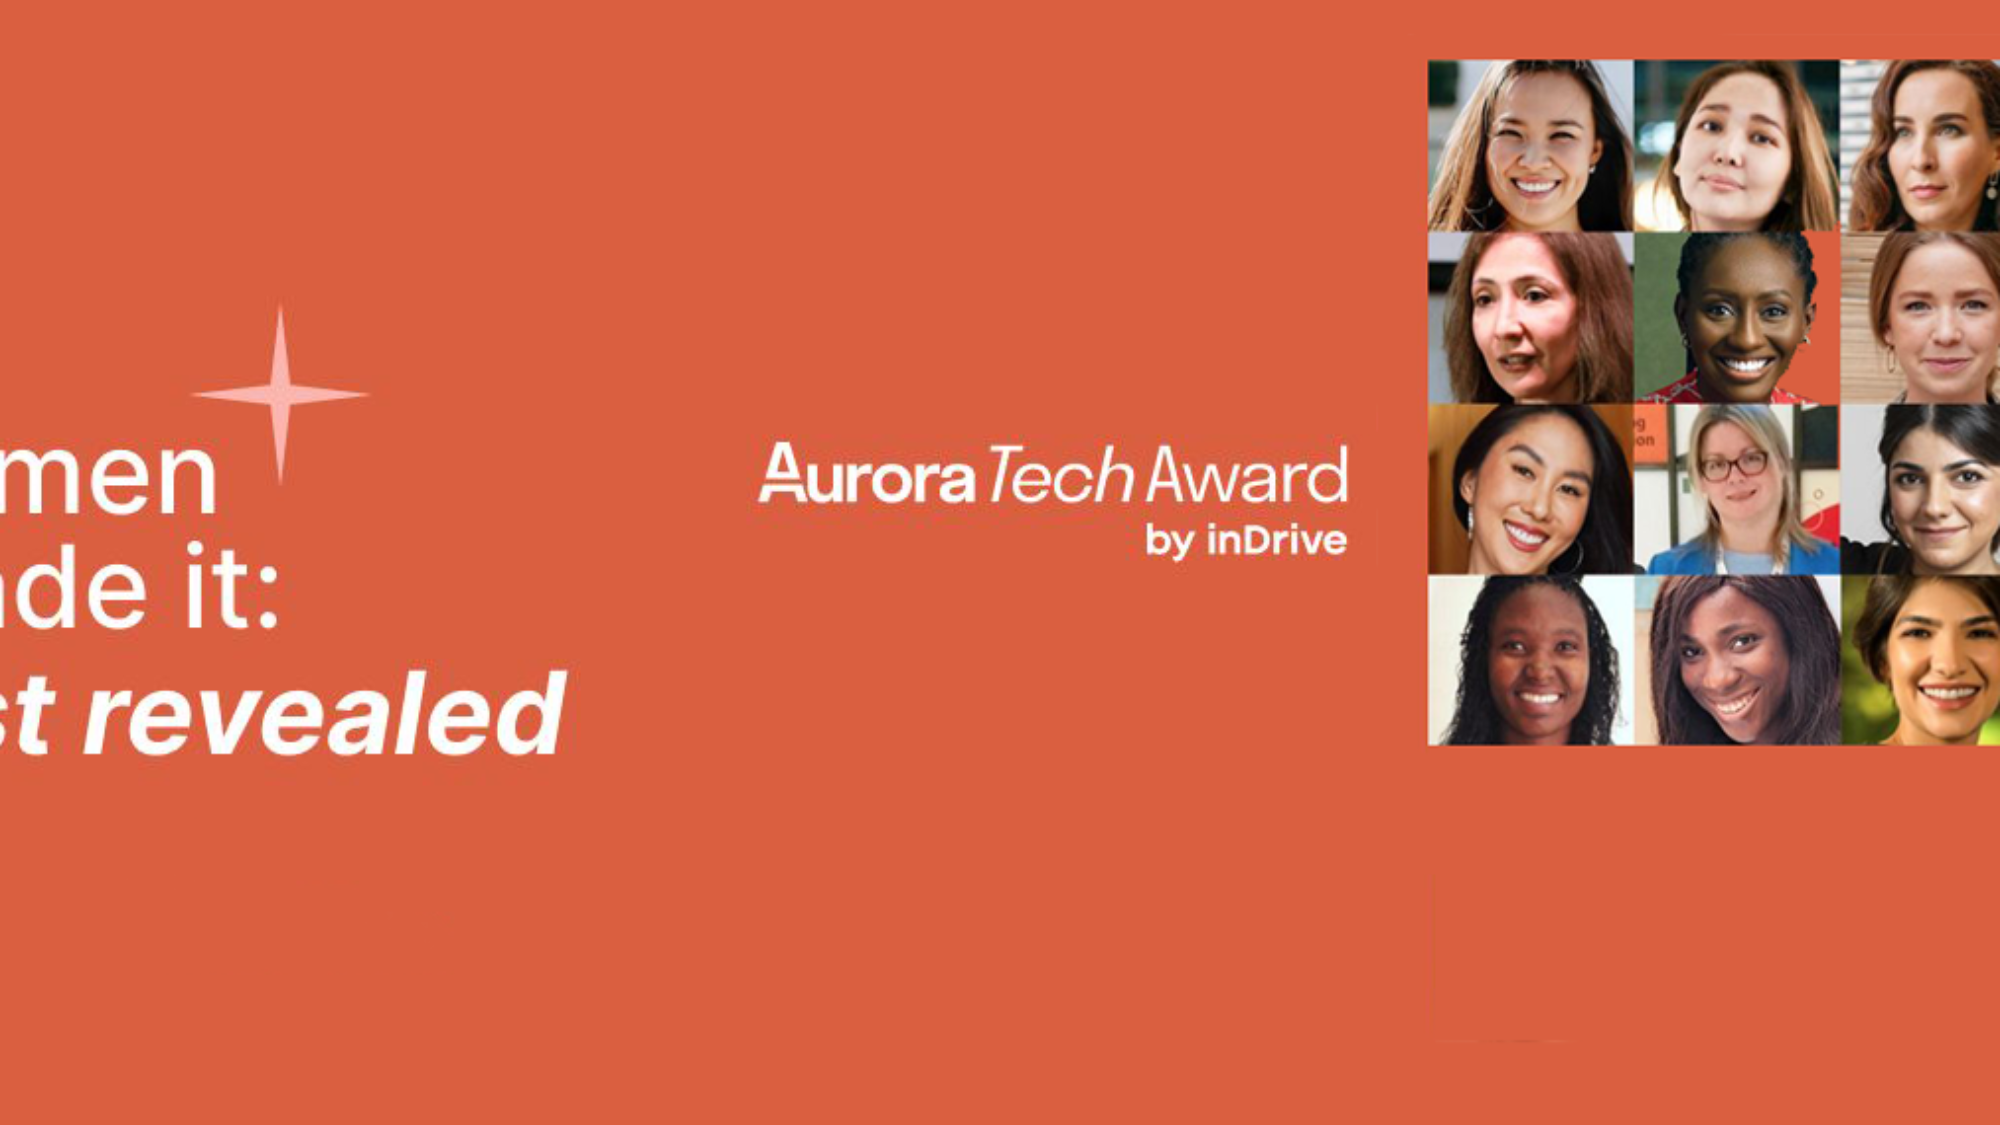 aurora tech award